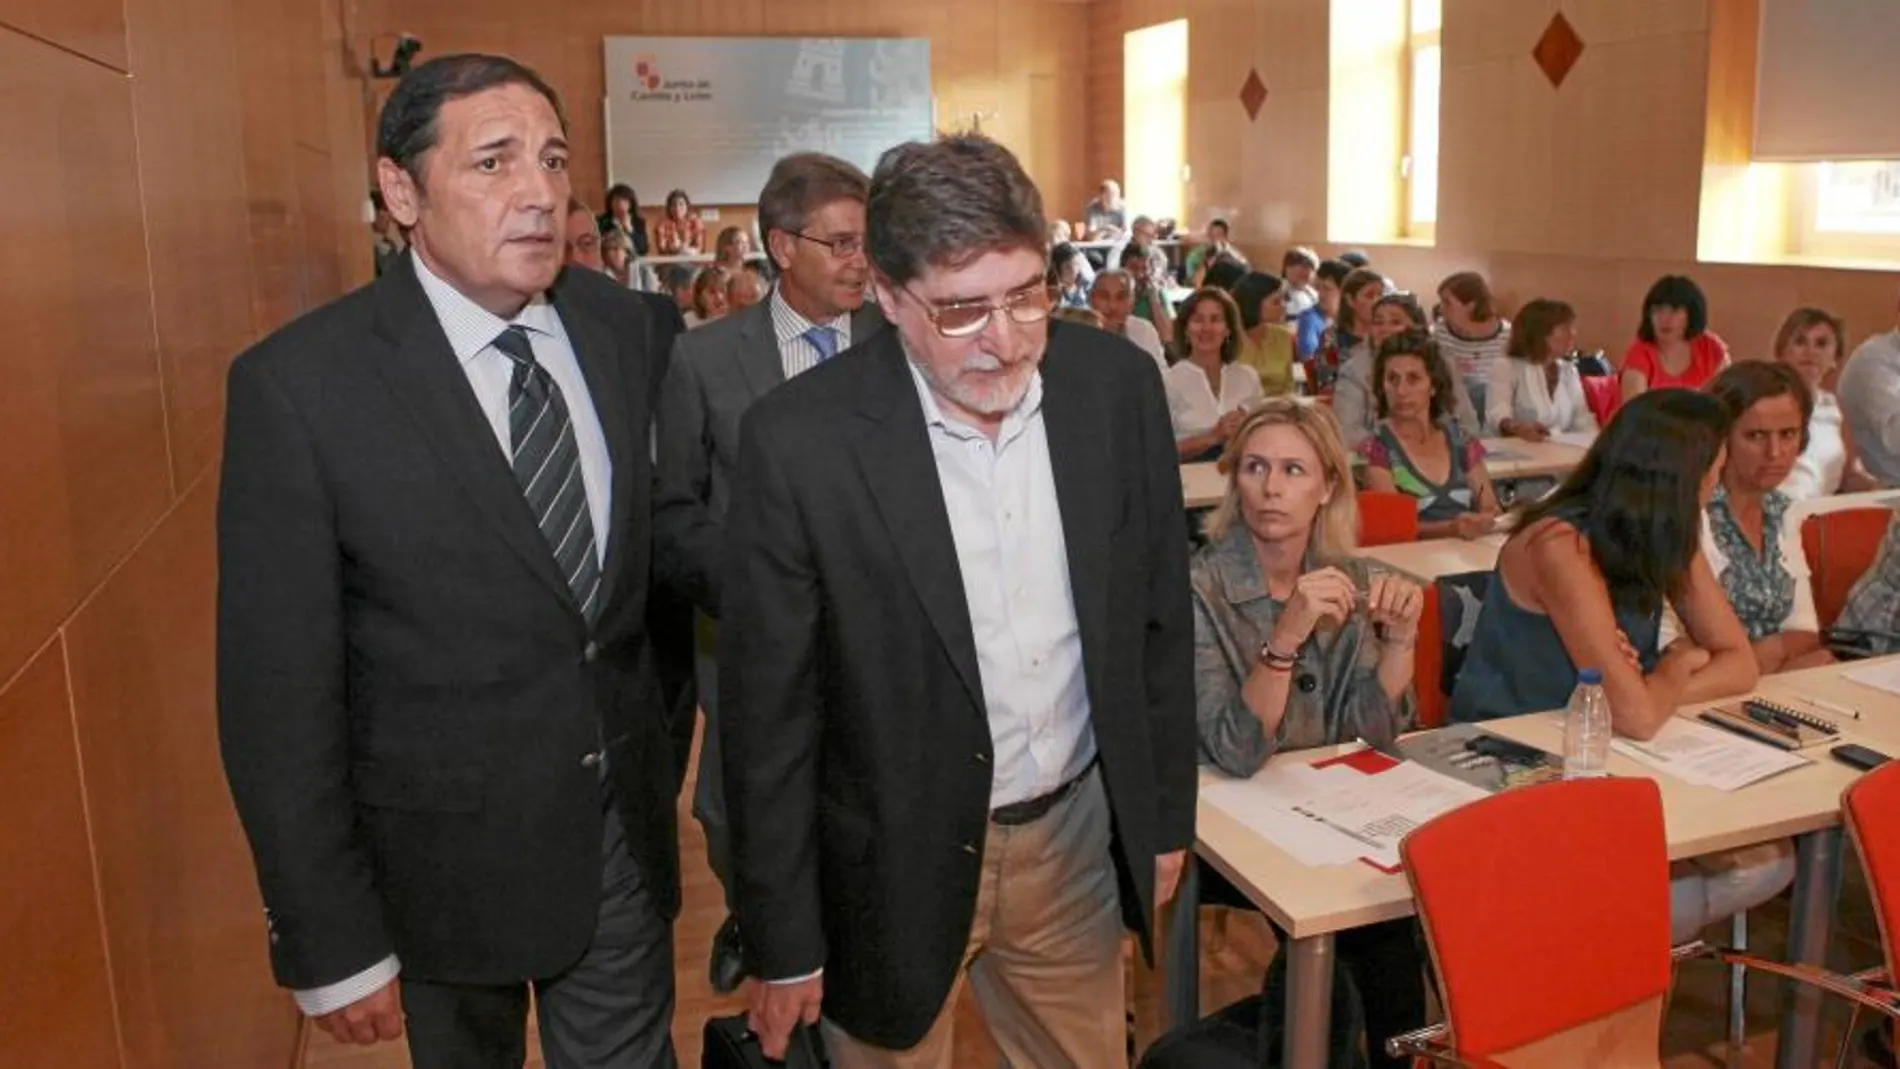 El consejero de Sanidad, Antonio María Sáez Aguado, presenta la guía, junto con Luis Mayoral